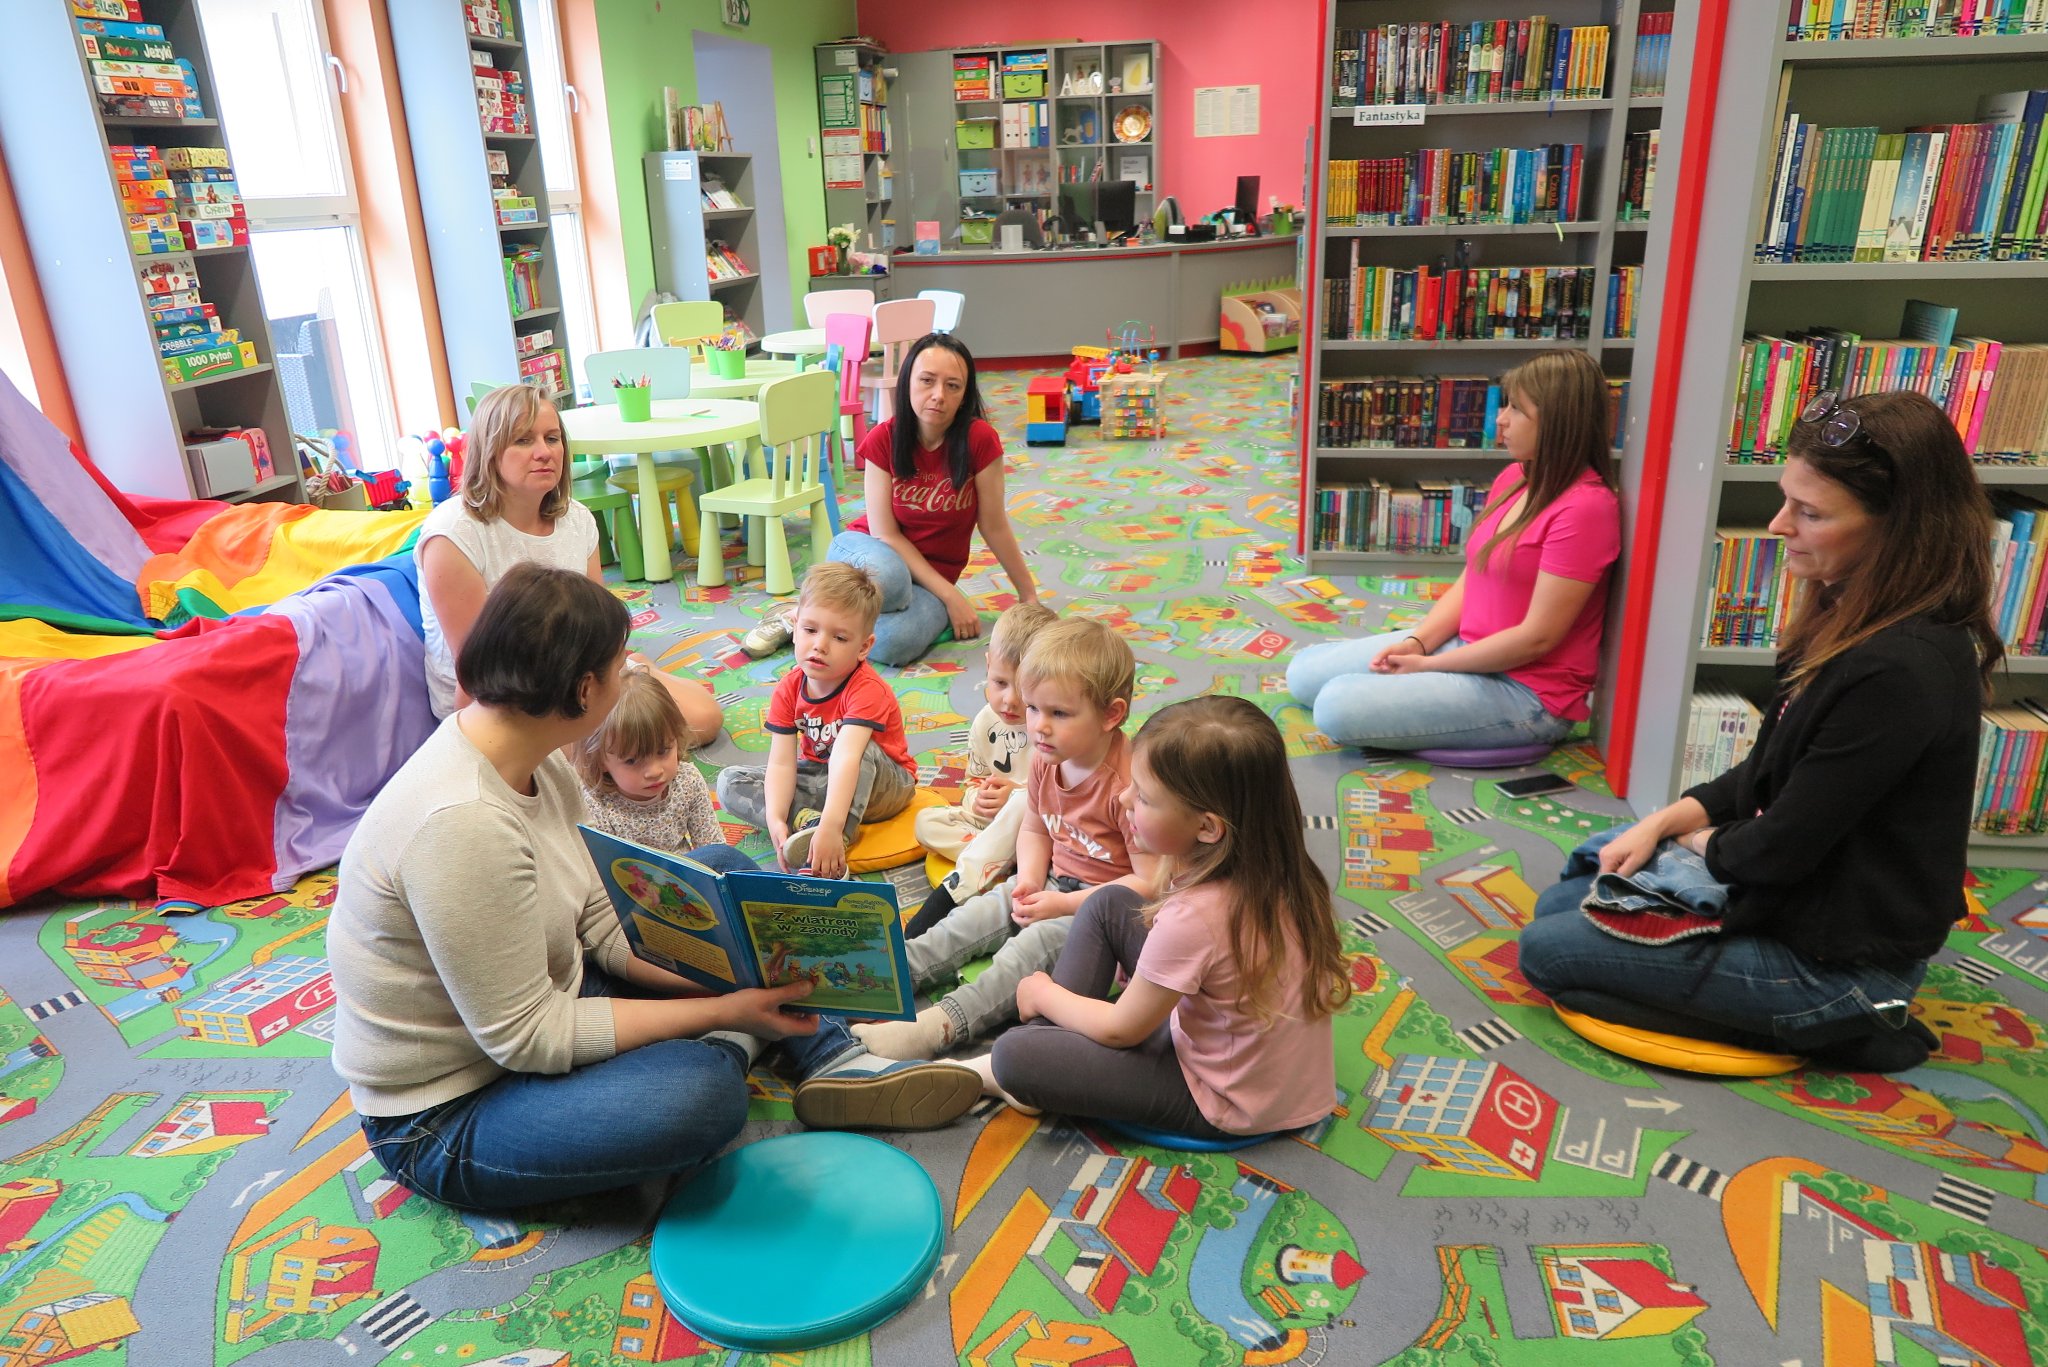 spotkanie klubu malucha, dzieci z rodzicami siedzą na podłodze w oddziale dla dzieci, bibliotekarka pokazuje im książkę